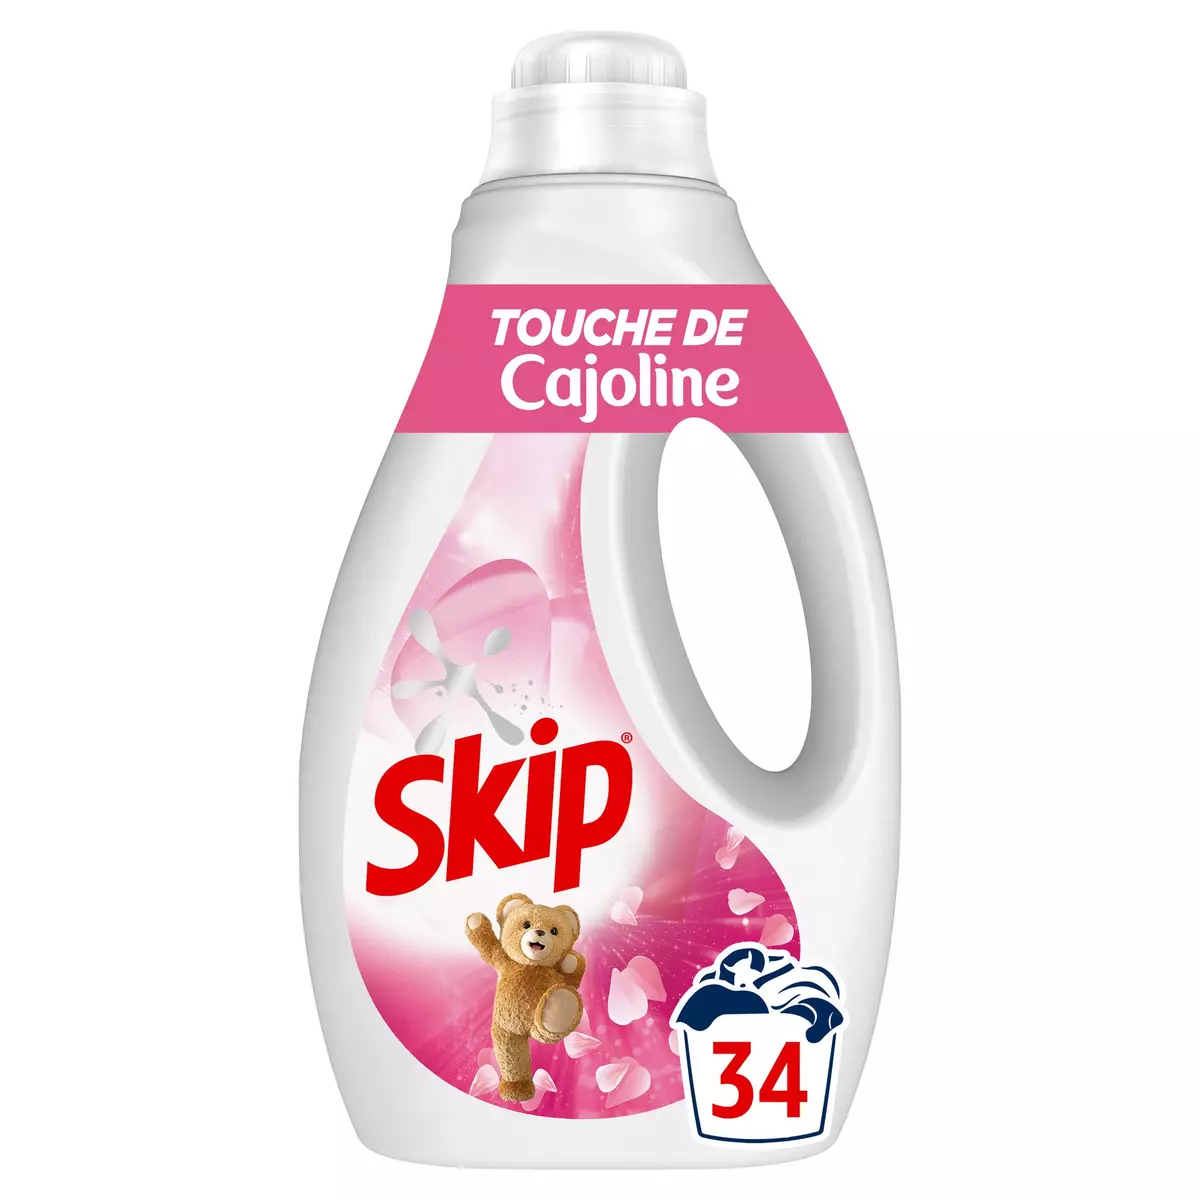 SKIP Lessive liquide touche de Cajoline 34 lavages 1,53l